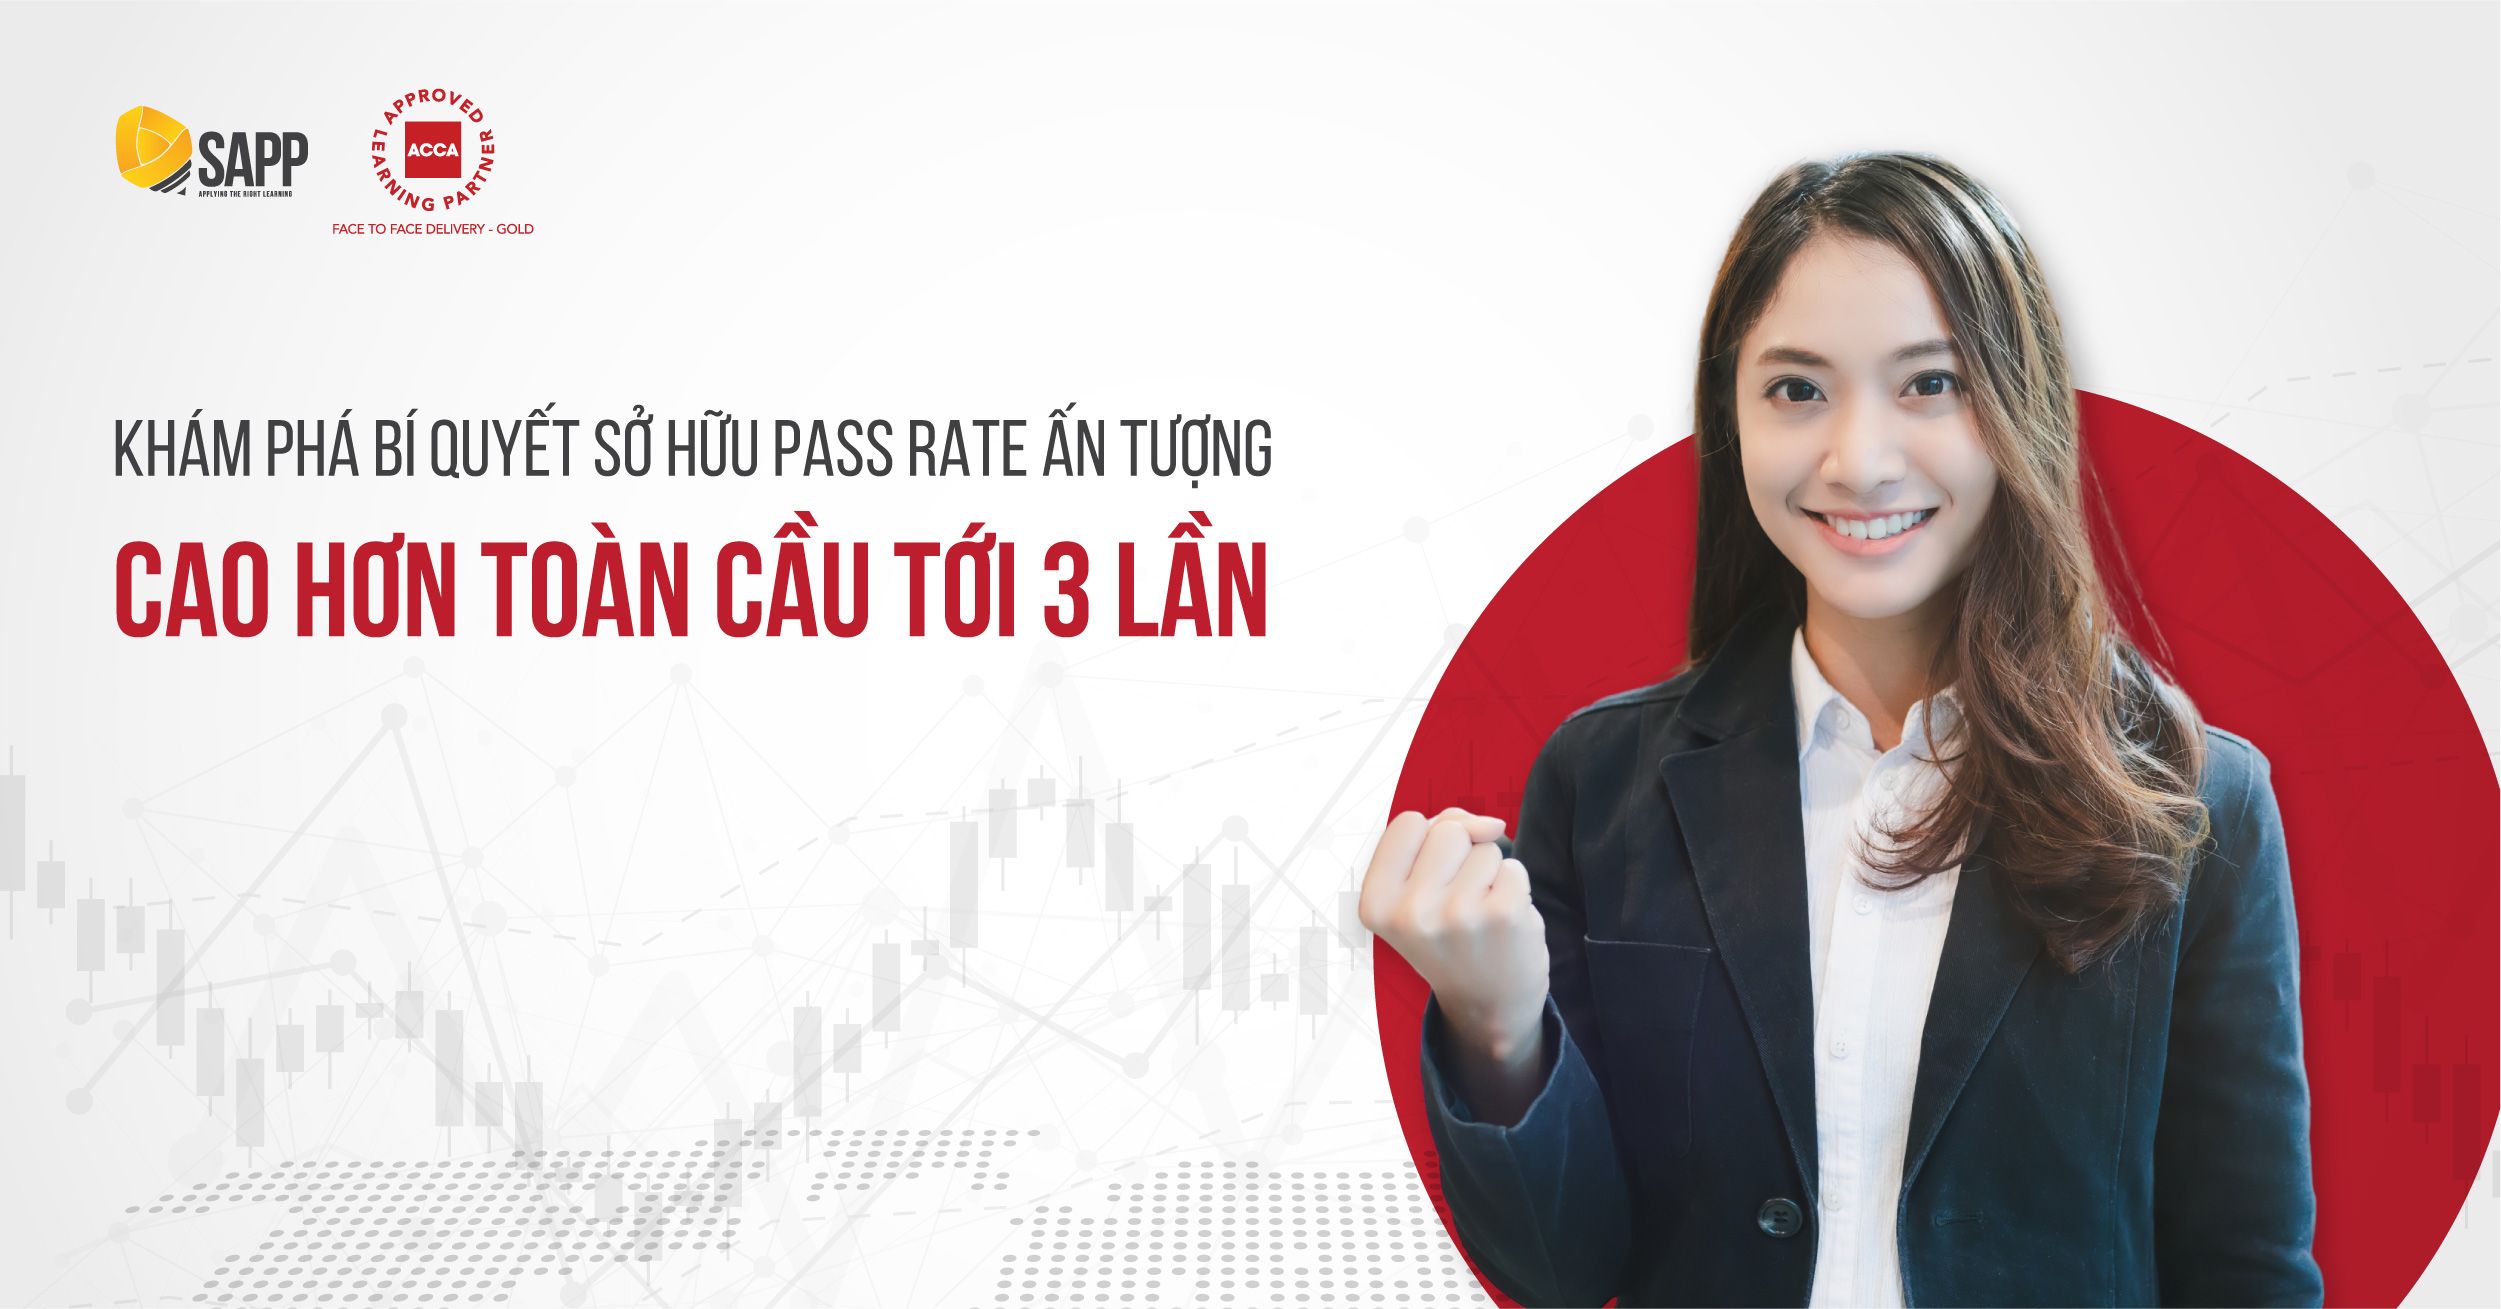 100% Pass Rate Của SAPP Cao Vượt Trội Toàn Cầu Trong Kỳ Thi ACCA Tháng 3 Năm 2022